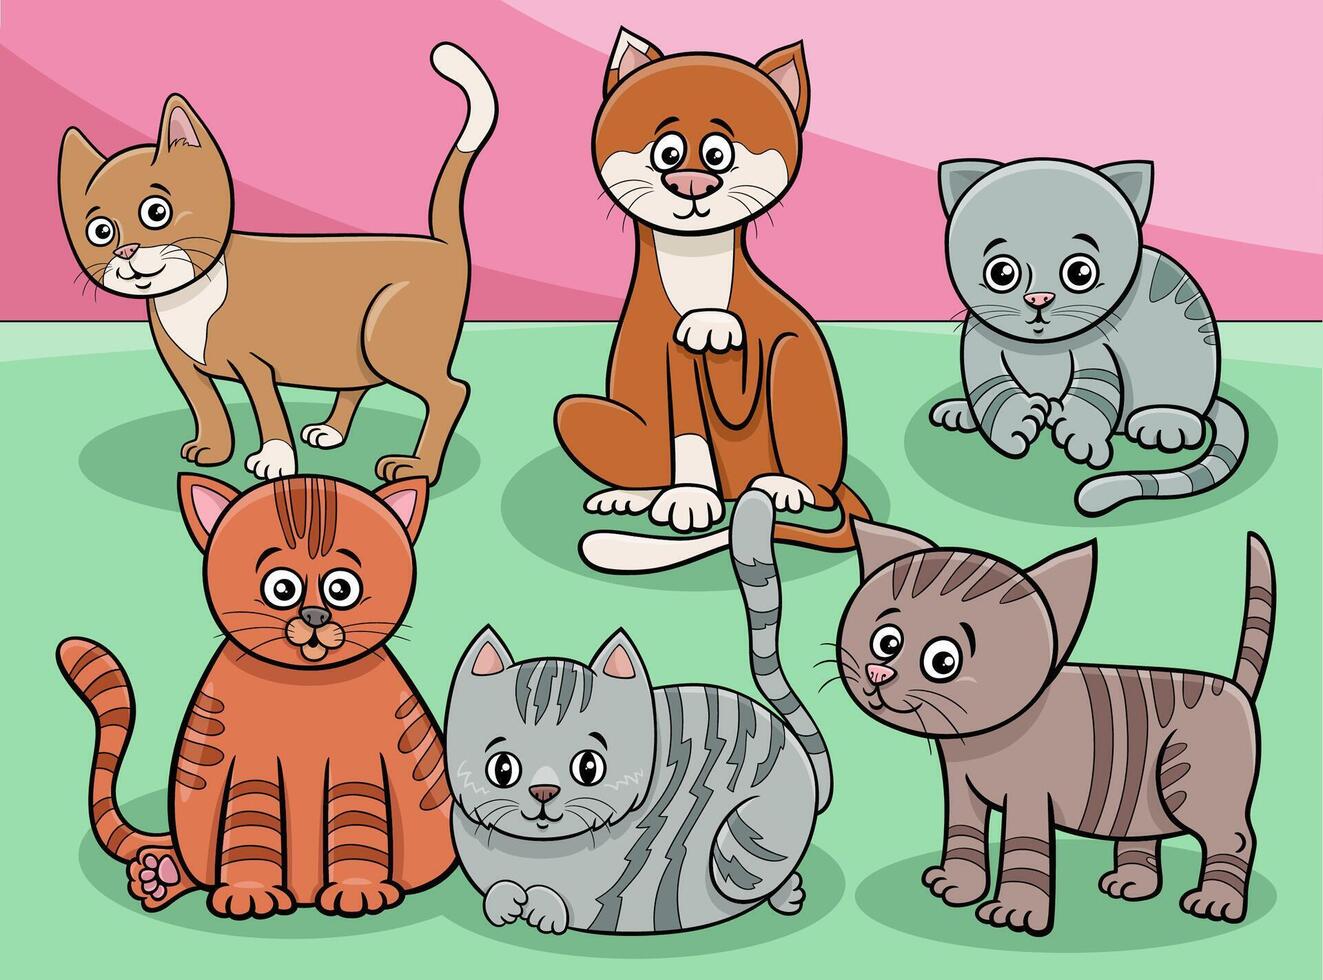 tekenfilm katten en kittens dierlijke karakters groep vector